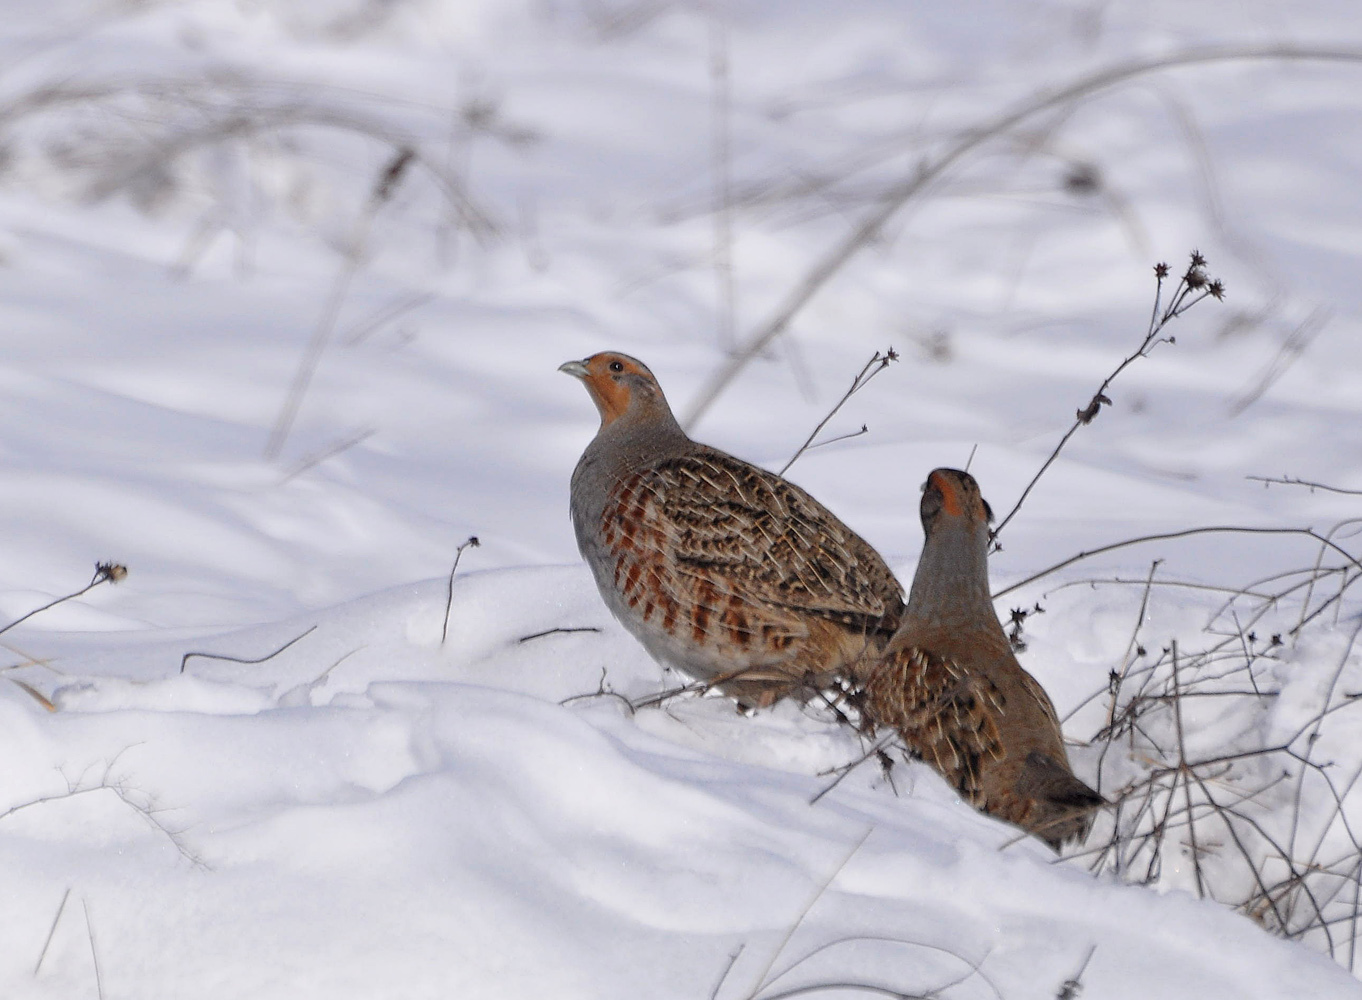 สีเทา partridges ในฤดูหนาว